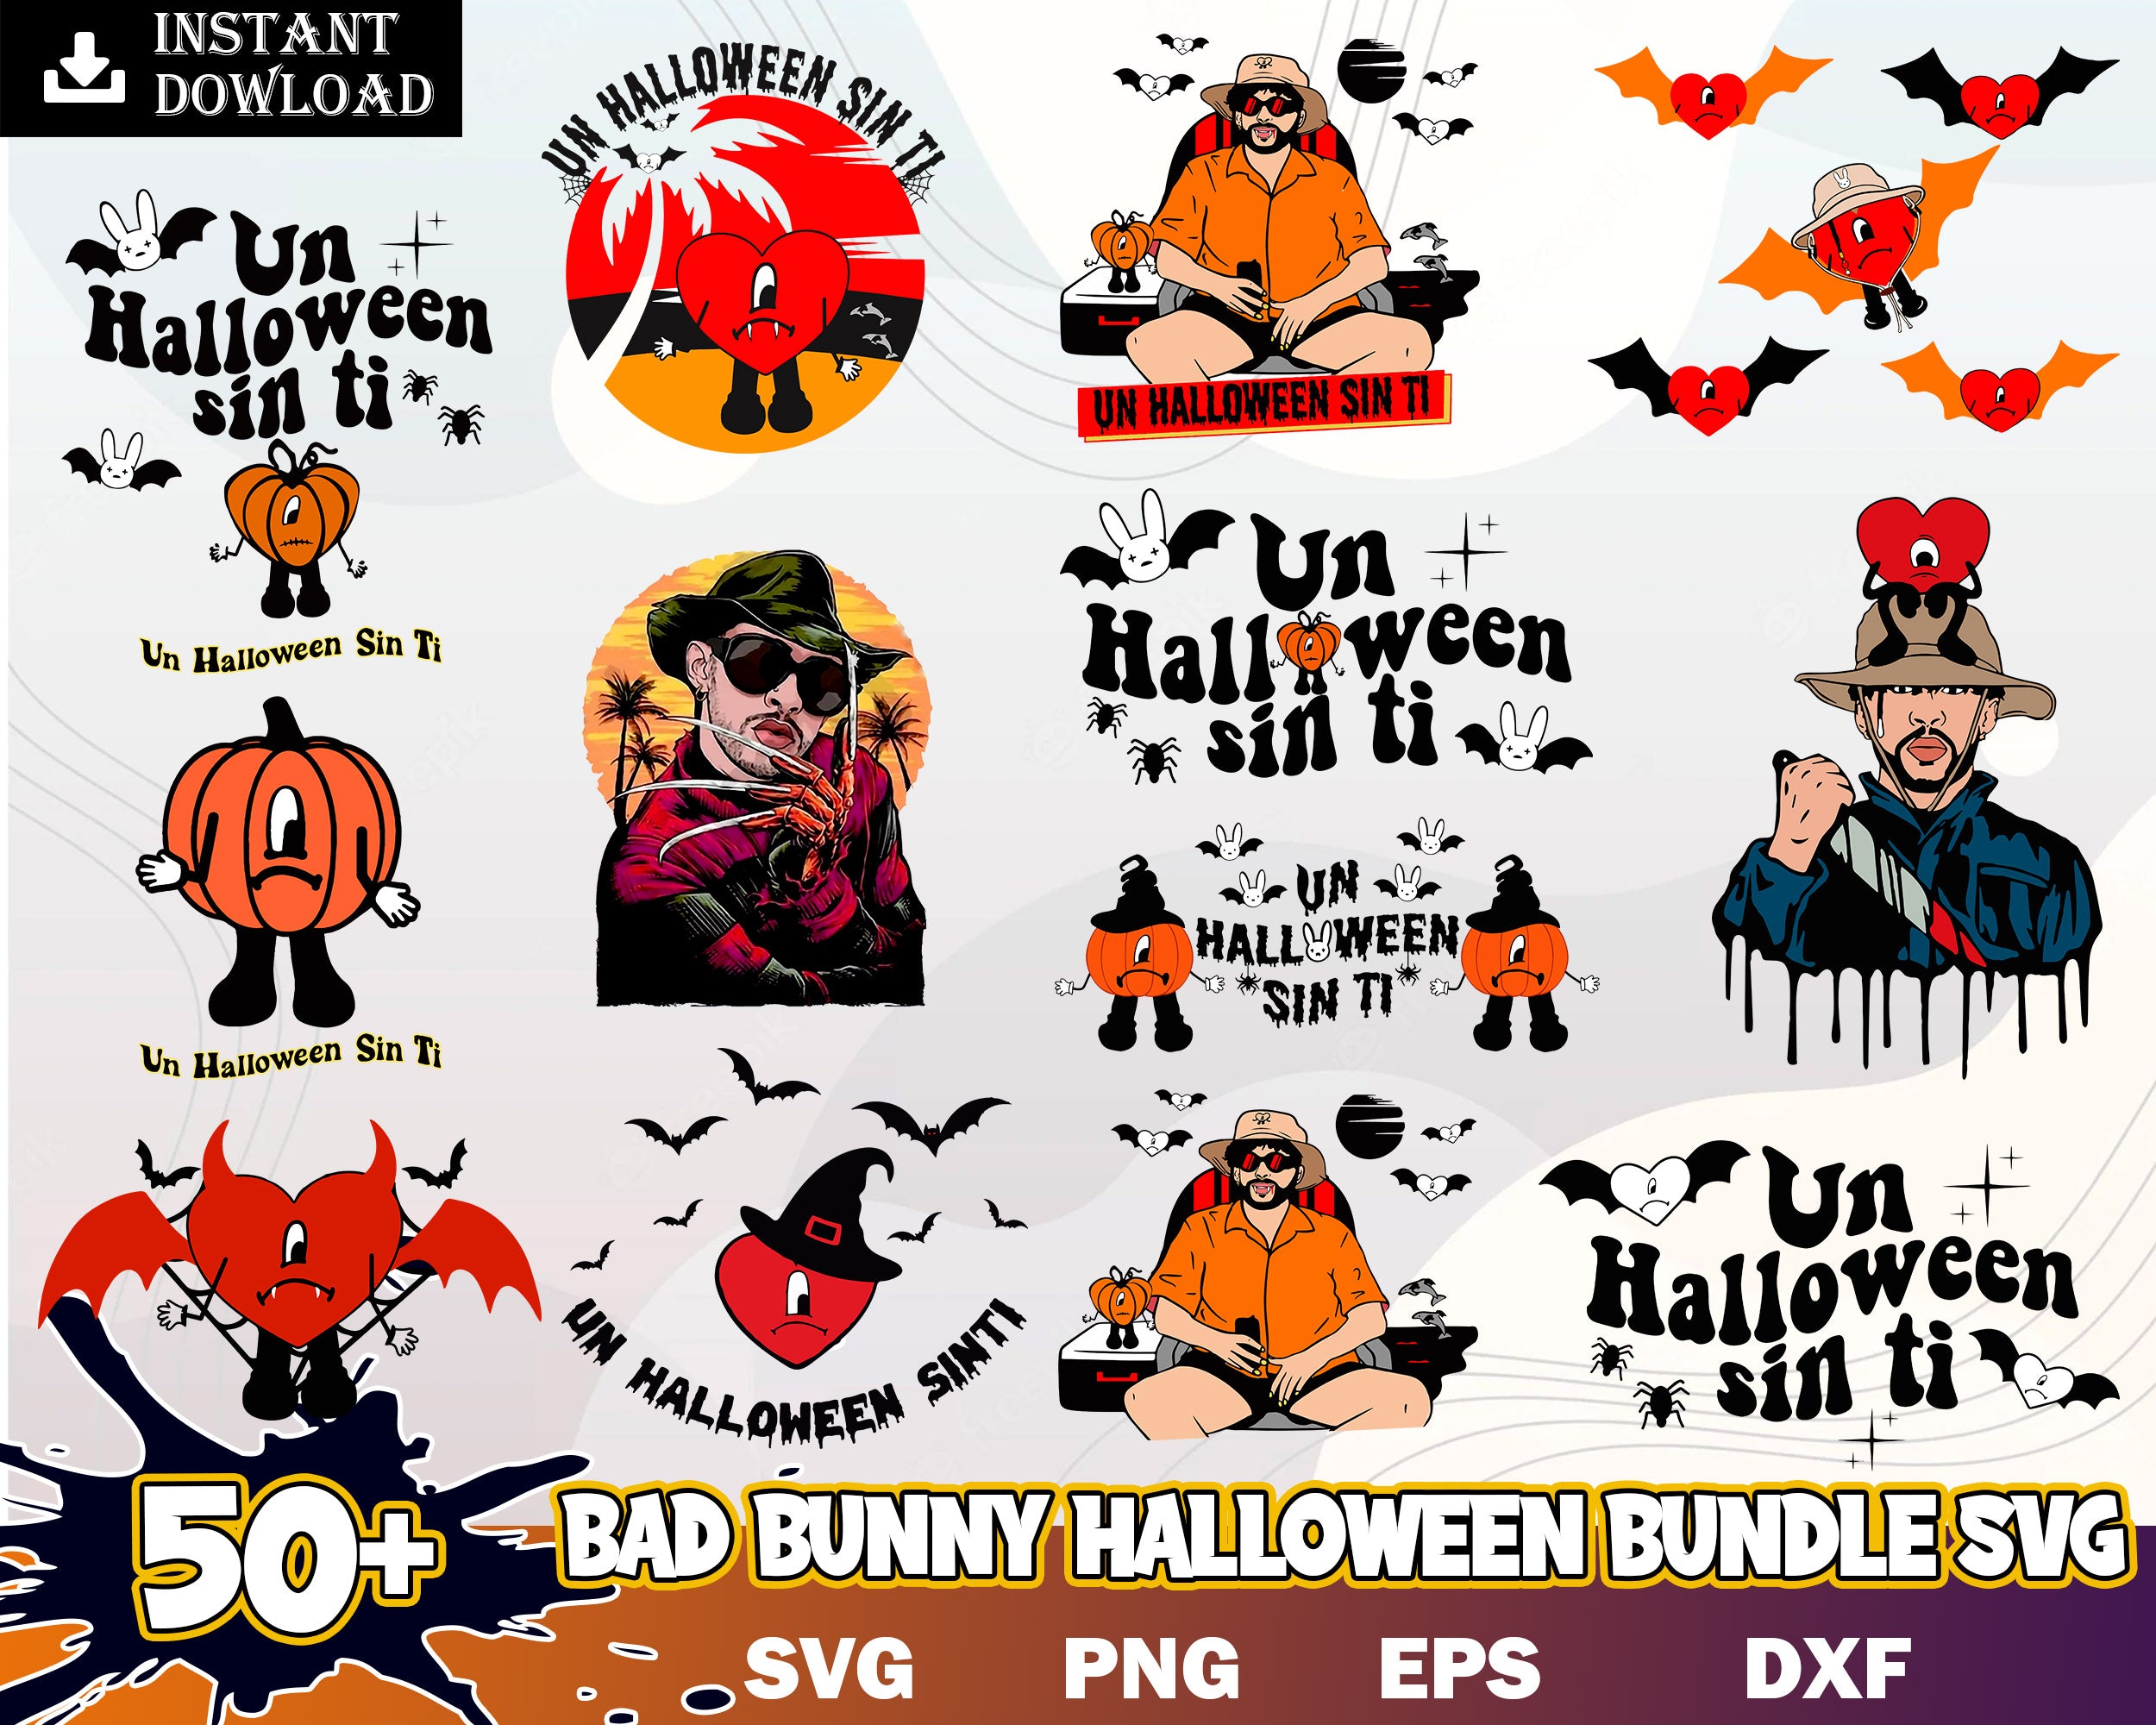 50+ Bad Bunny Halloween, Bad Bunny Horror SVG, Bad Bunny svg, Freddy Kruger svg, Svg files for cricut, Digital download.